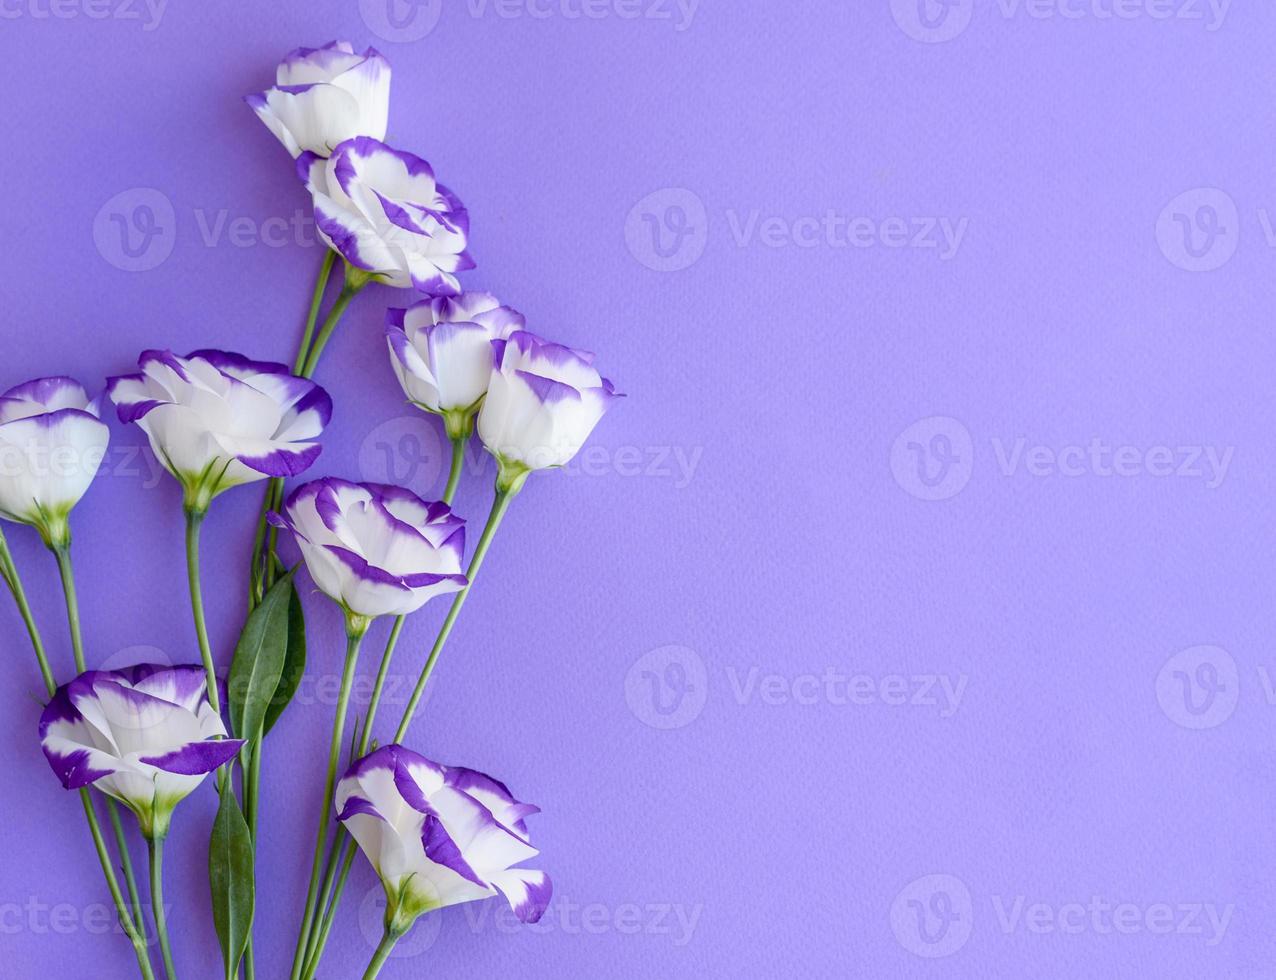 un bouquet de bel eustoma violet fraîchement coupé photo